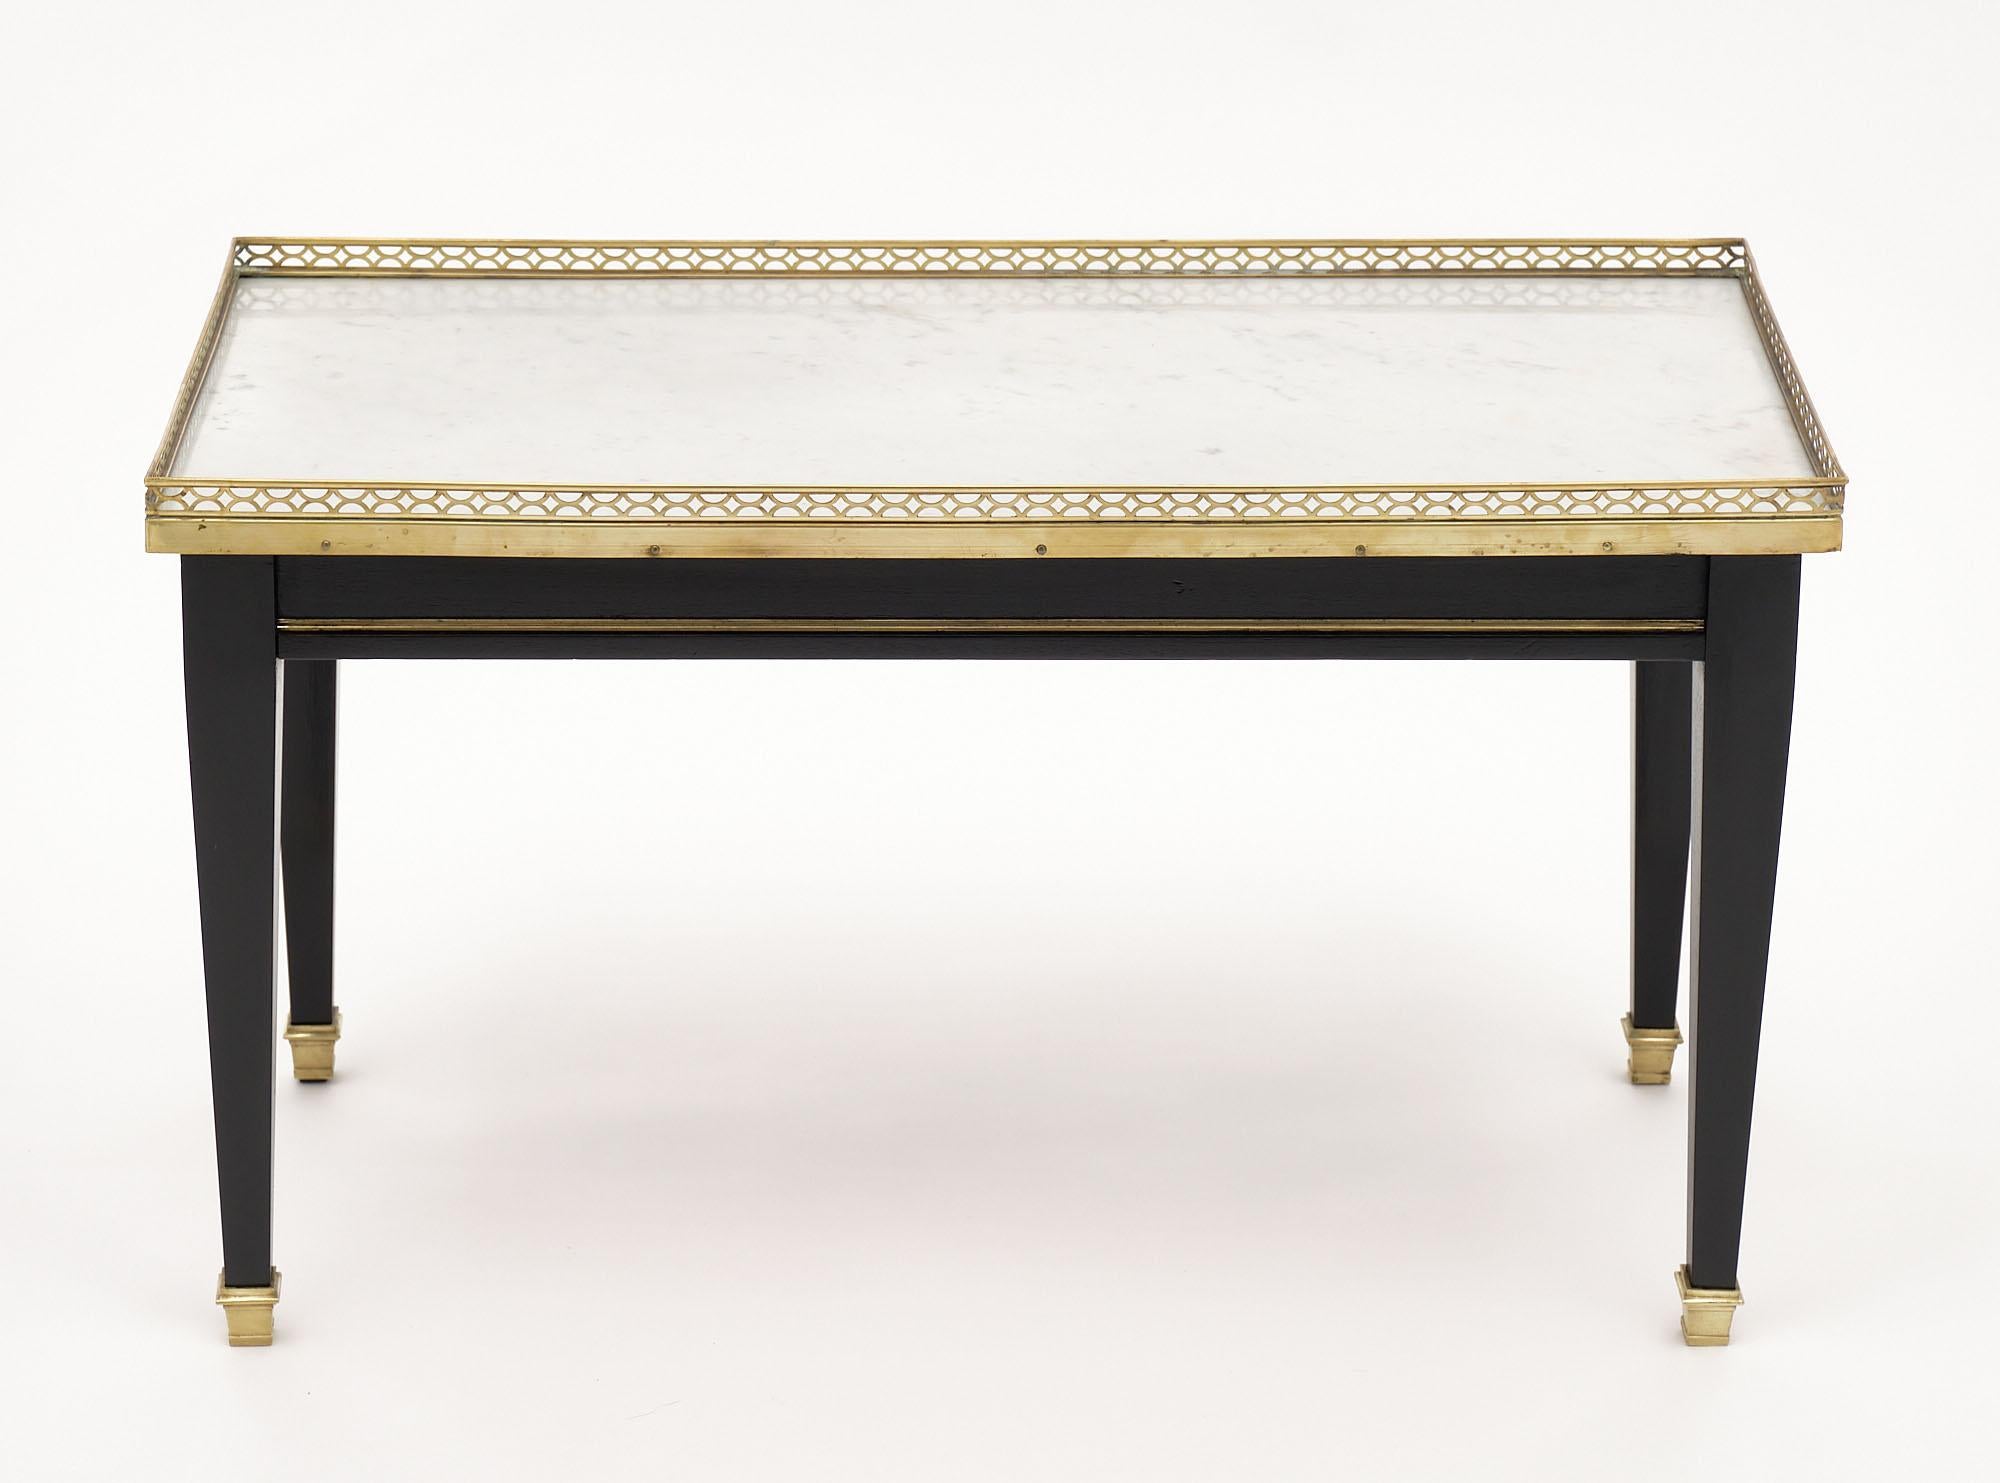 Couchtisch aus Frankreich im Stil Louis XVI. Der Tisch hat vier konische Beine, eine Schublade mit Schwalbenschwanz und die Originalplatte aus Carrara-Marmor. Die Galerie aus vergoldetem Messing, die Bronzefüße und die Zierleisten aus vergoldetem